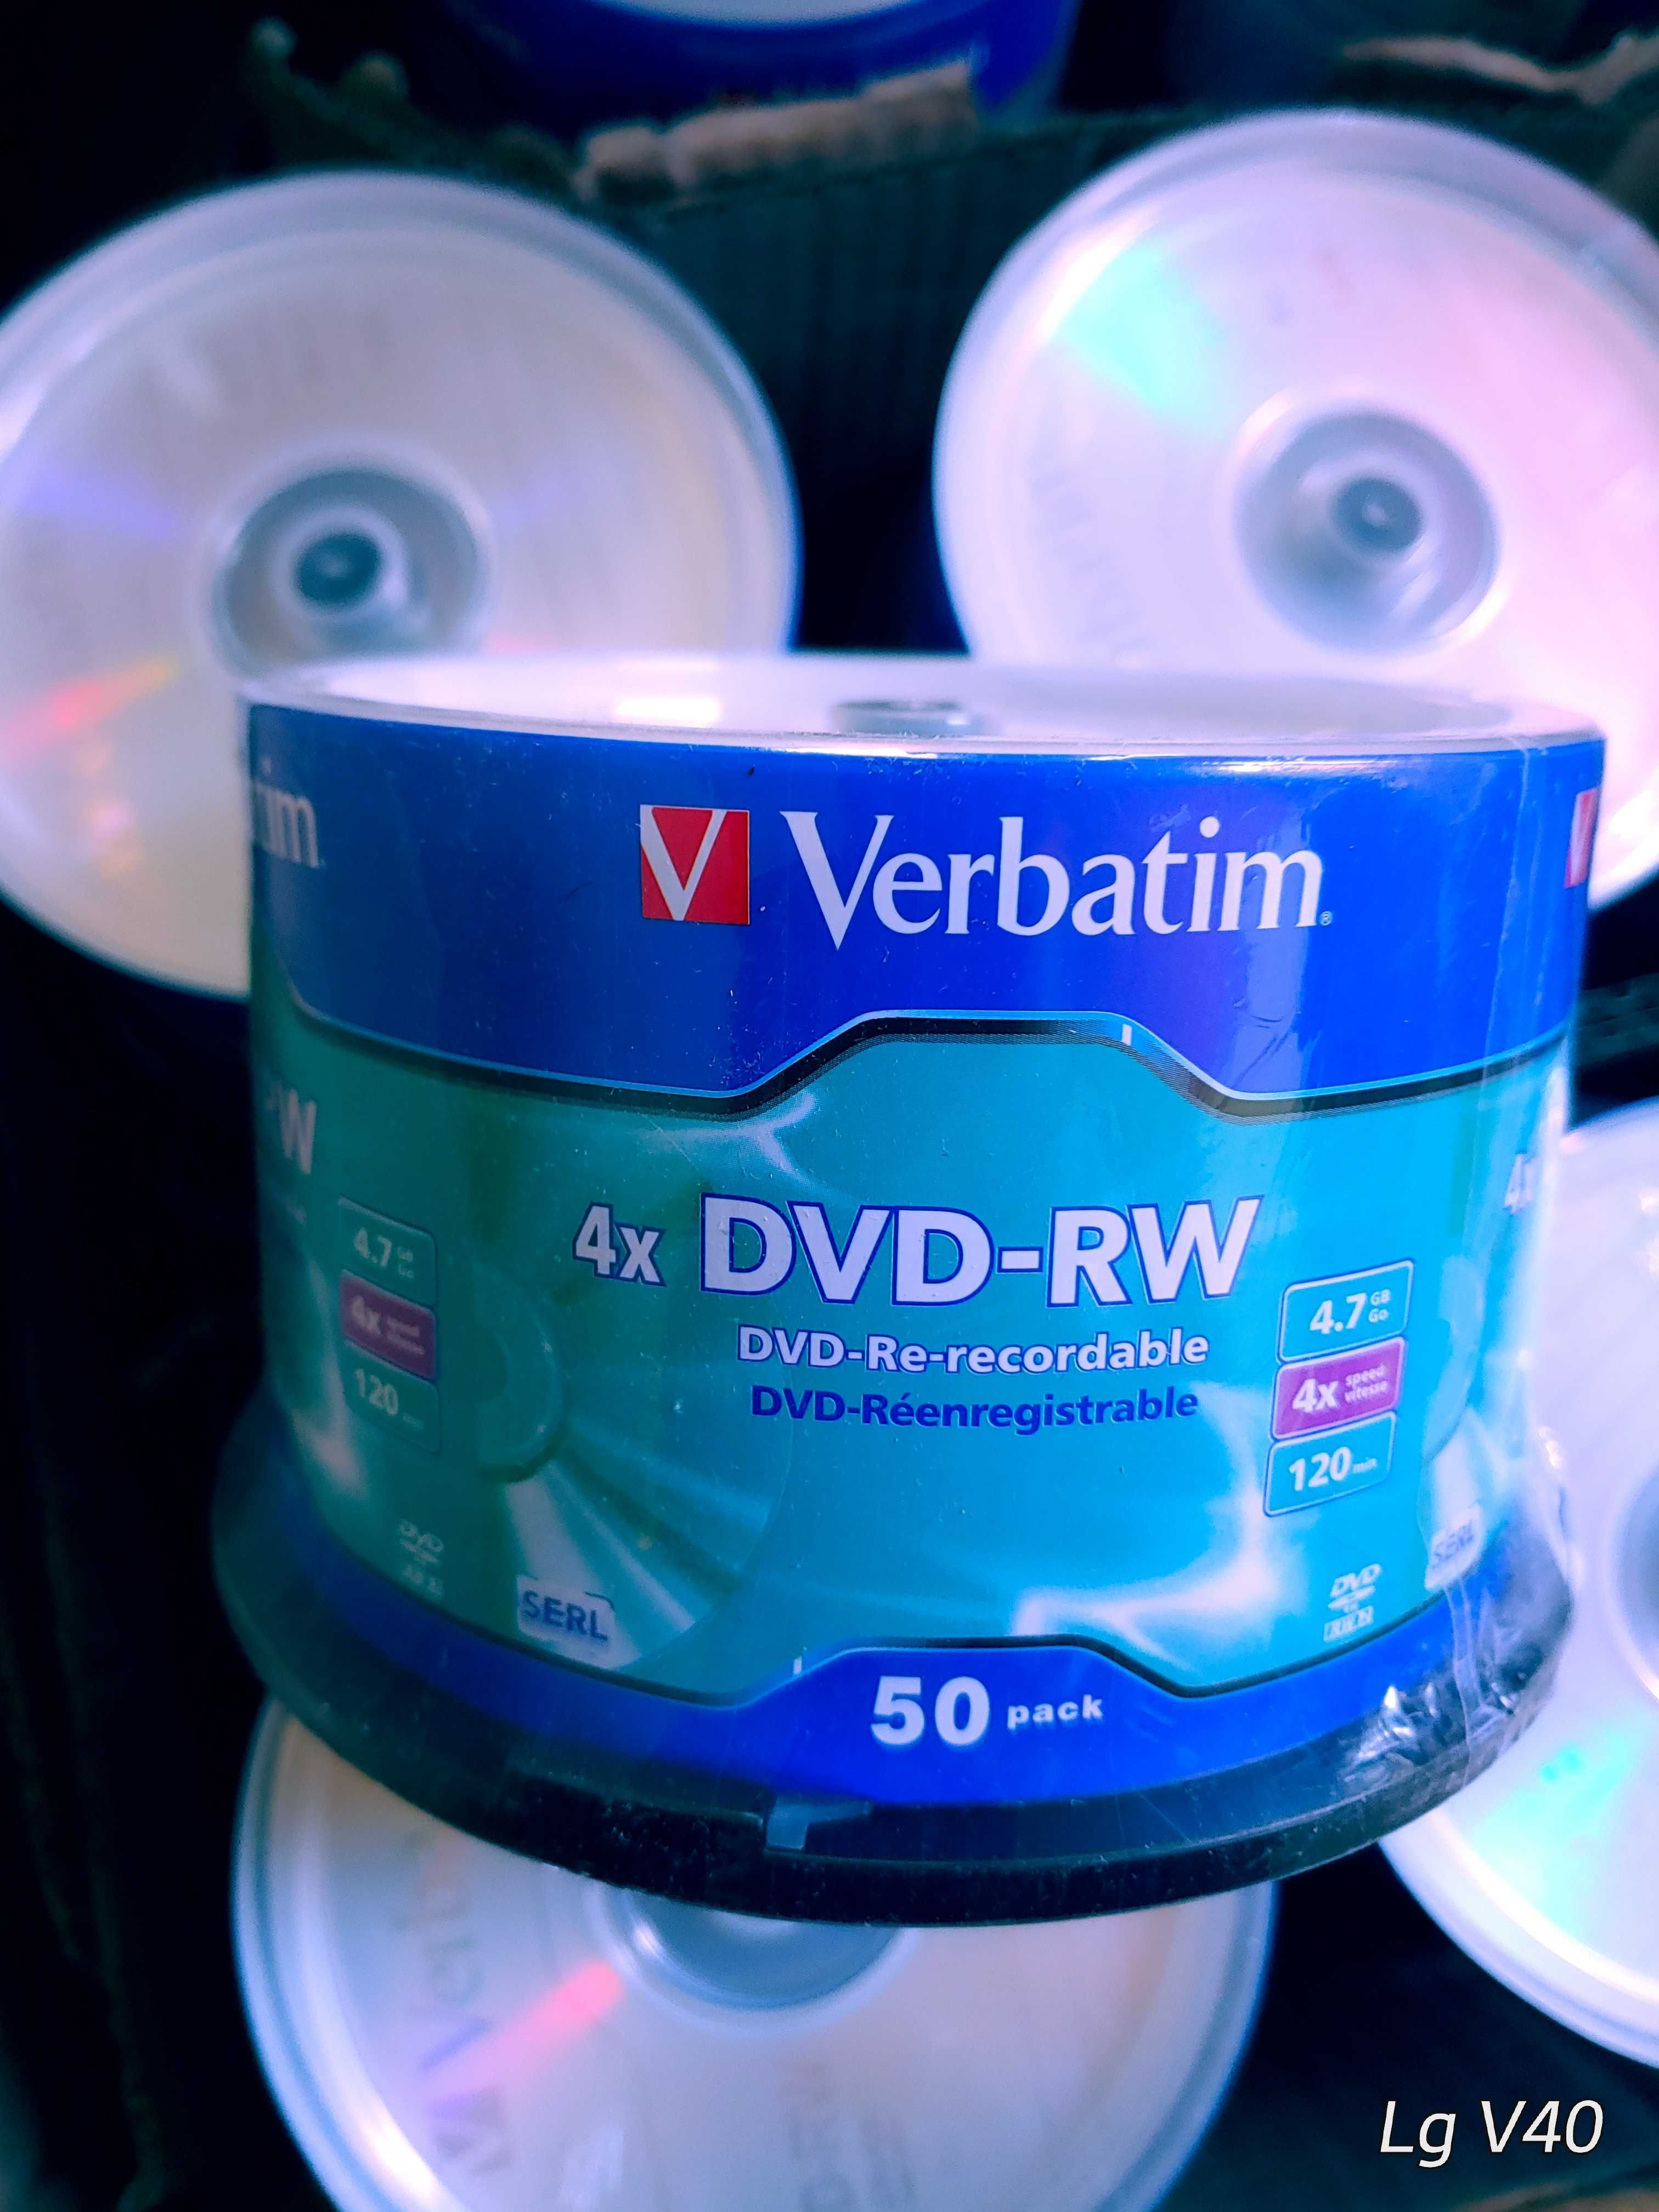 Диски DVD-RW Verbatim 4.7Gb 10шт. в конверті